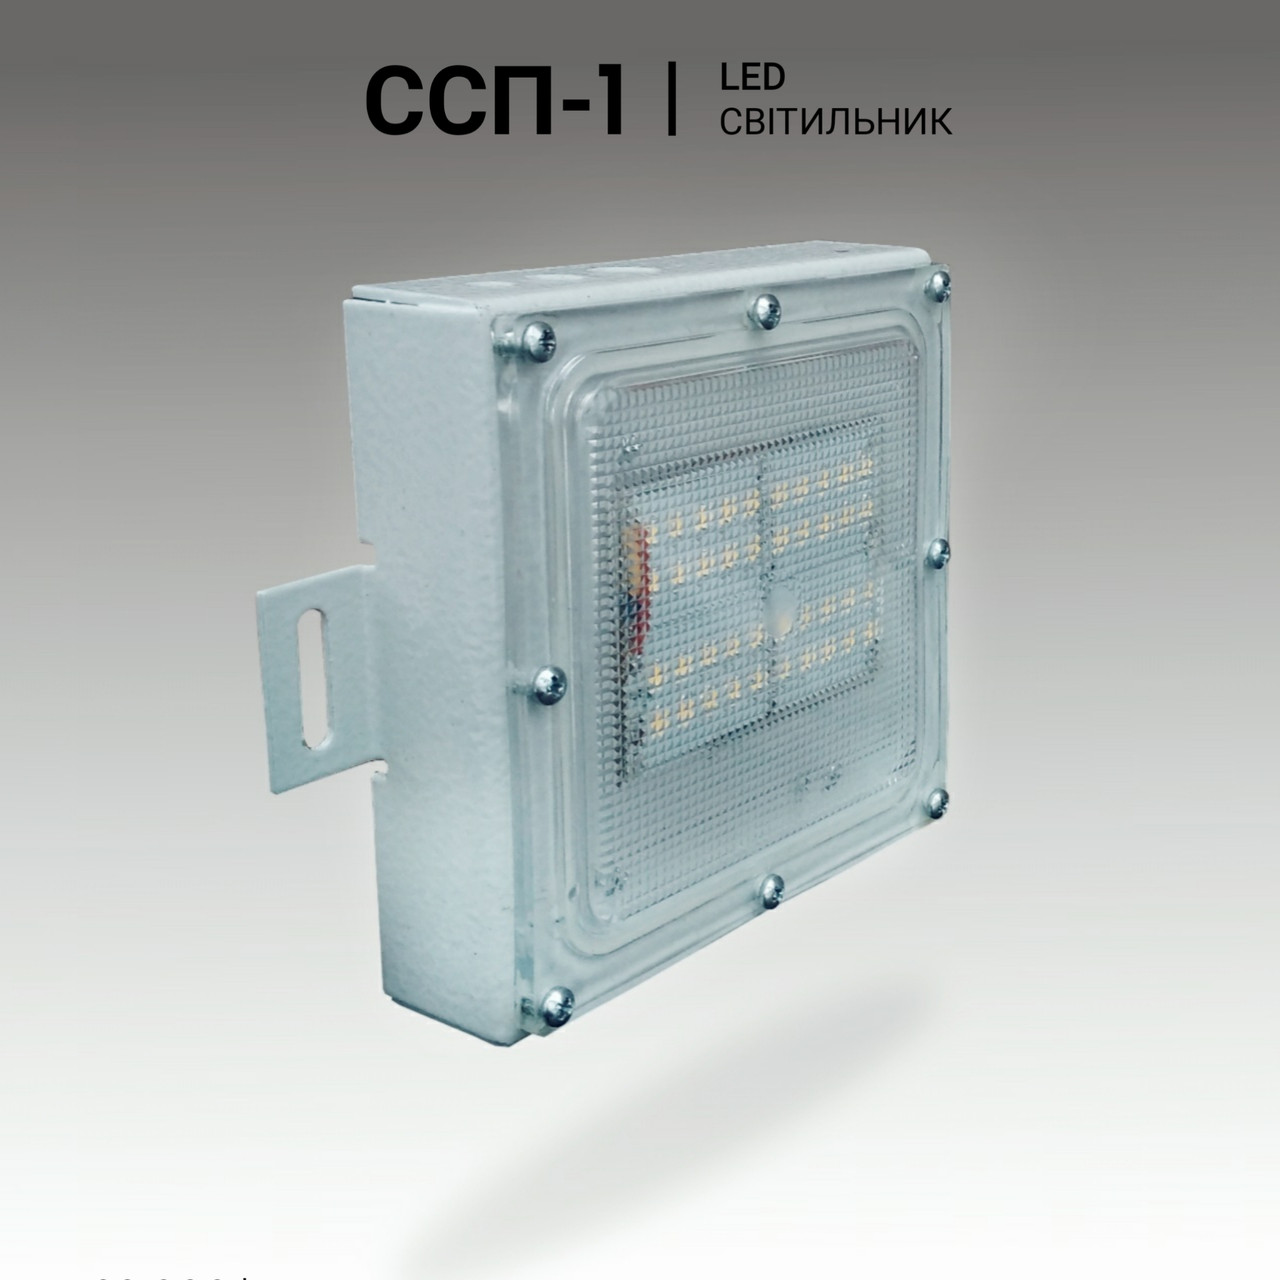 Світильник світлодіодний для РКХ 6 Вт, 220 V, антивандальний, ССП-1